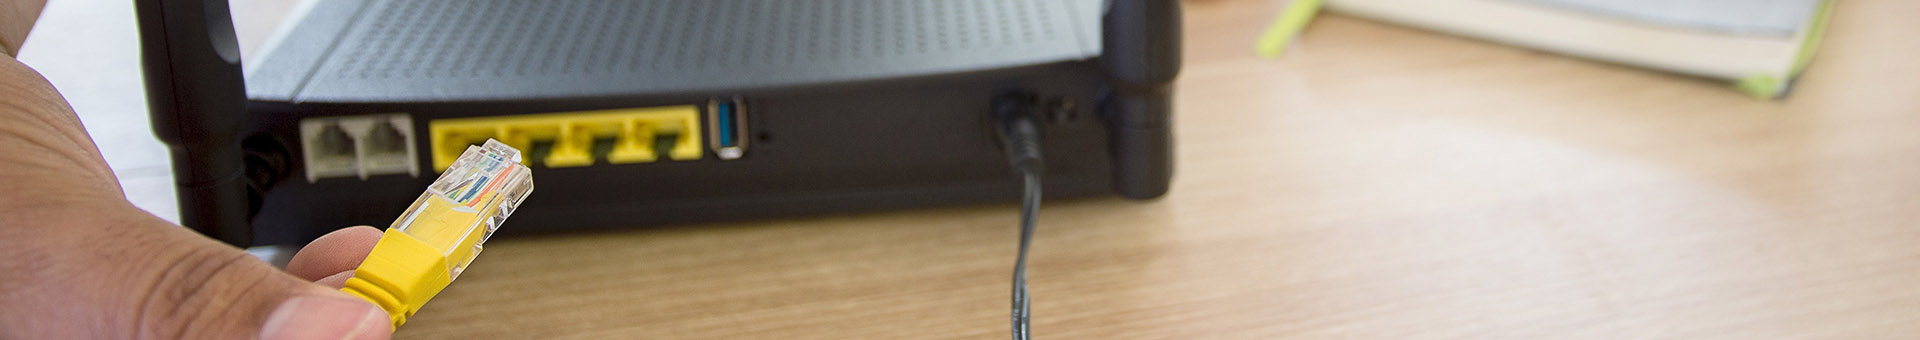 Dłoń wpinająca kabel sieciowy do routera